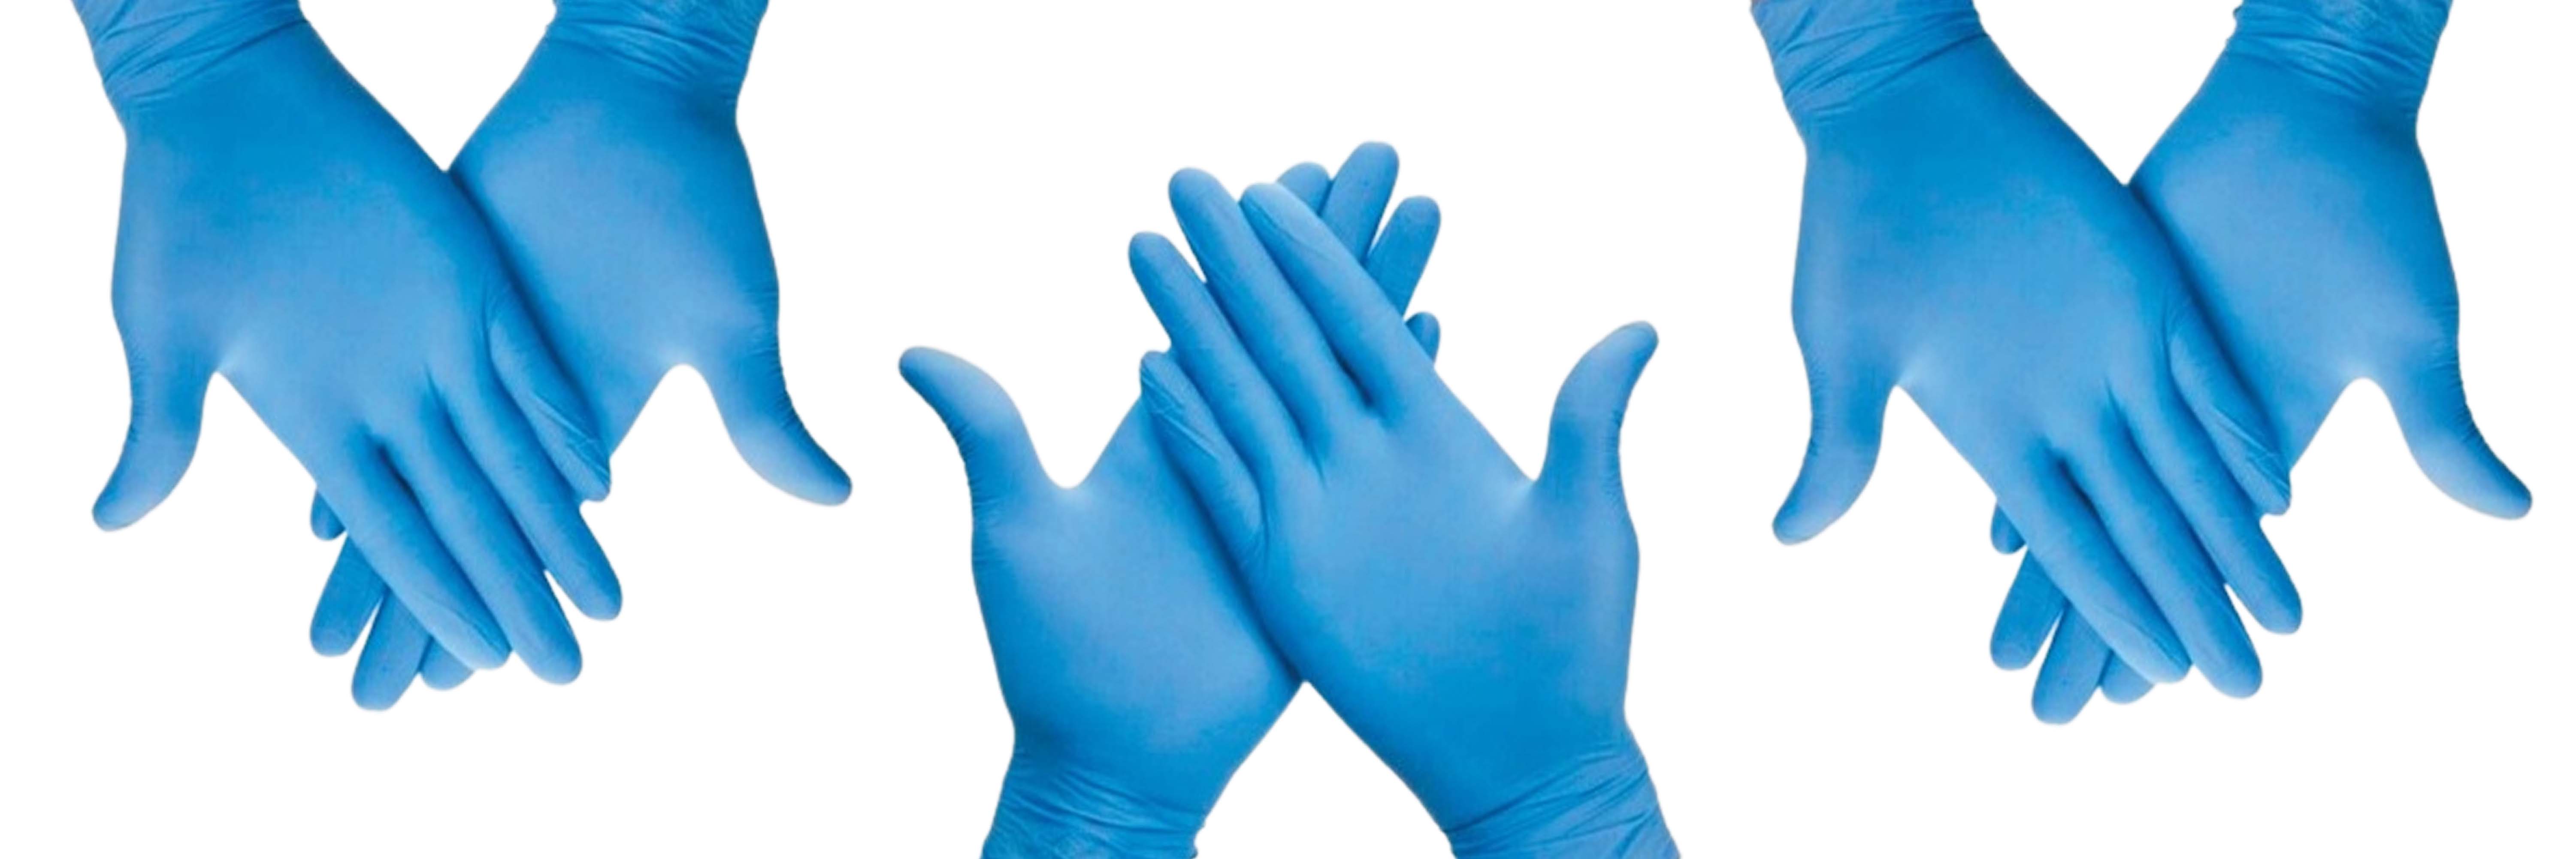 Cómo quitarse los guantes de forma segura